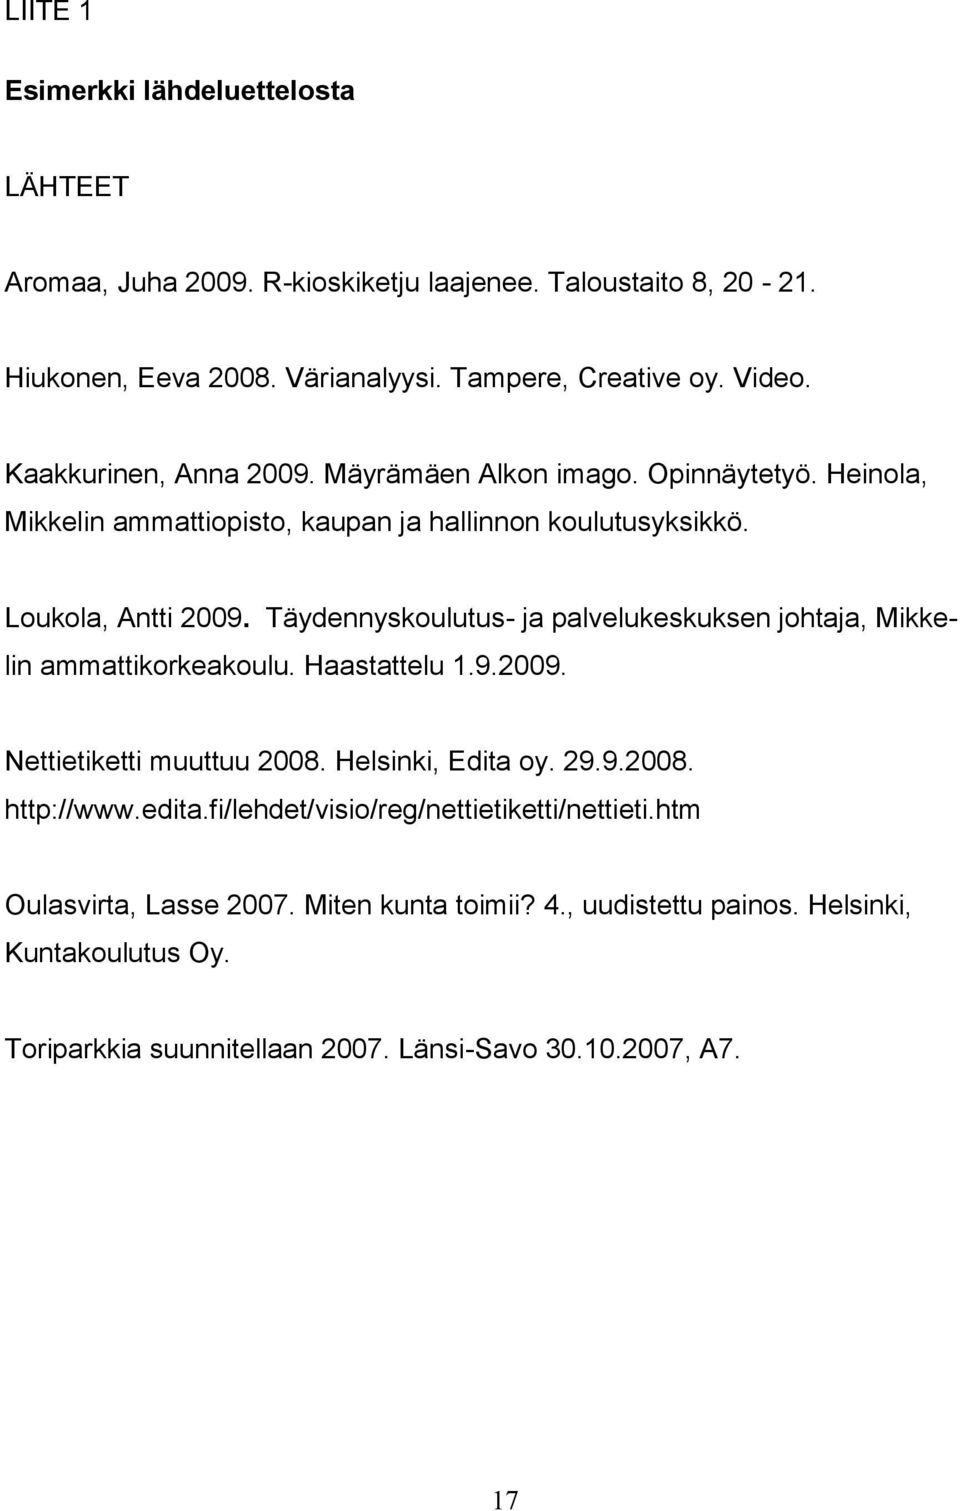 Täydennyskoulutus- ja palvelukeskuksen johtaja, Mikke- lin ammattikorkeakoulu. Haastattelu 1.9.2009. Nettietiketti muuttuu 2008. Helsinki, Edita oy. 29.9.2008. http://www.